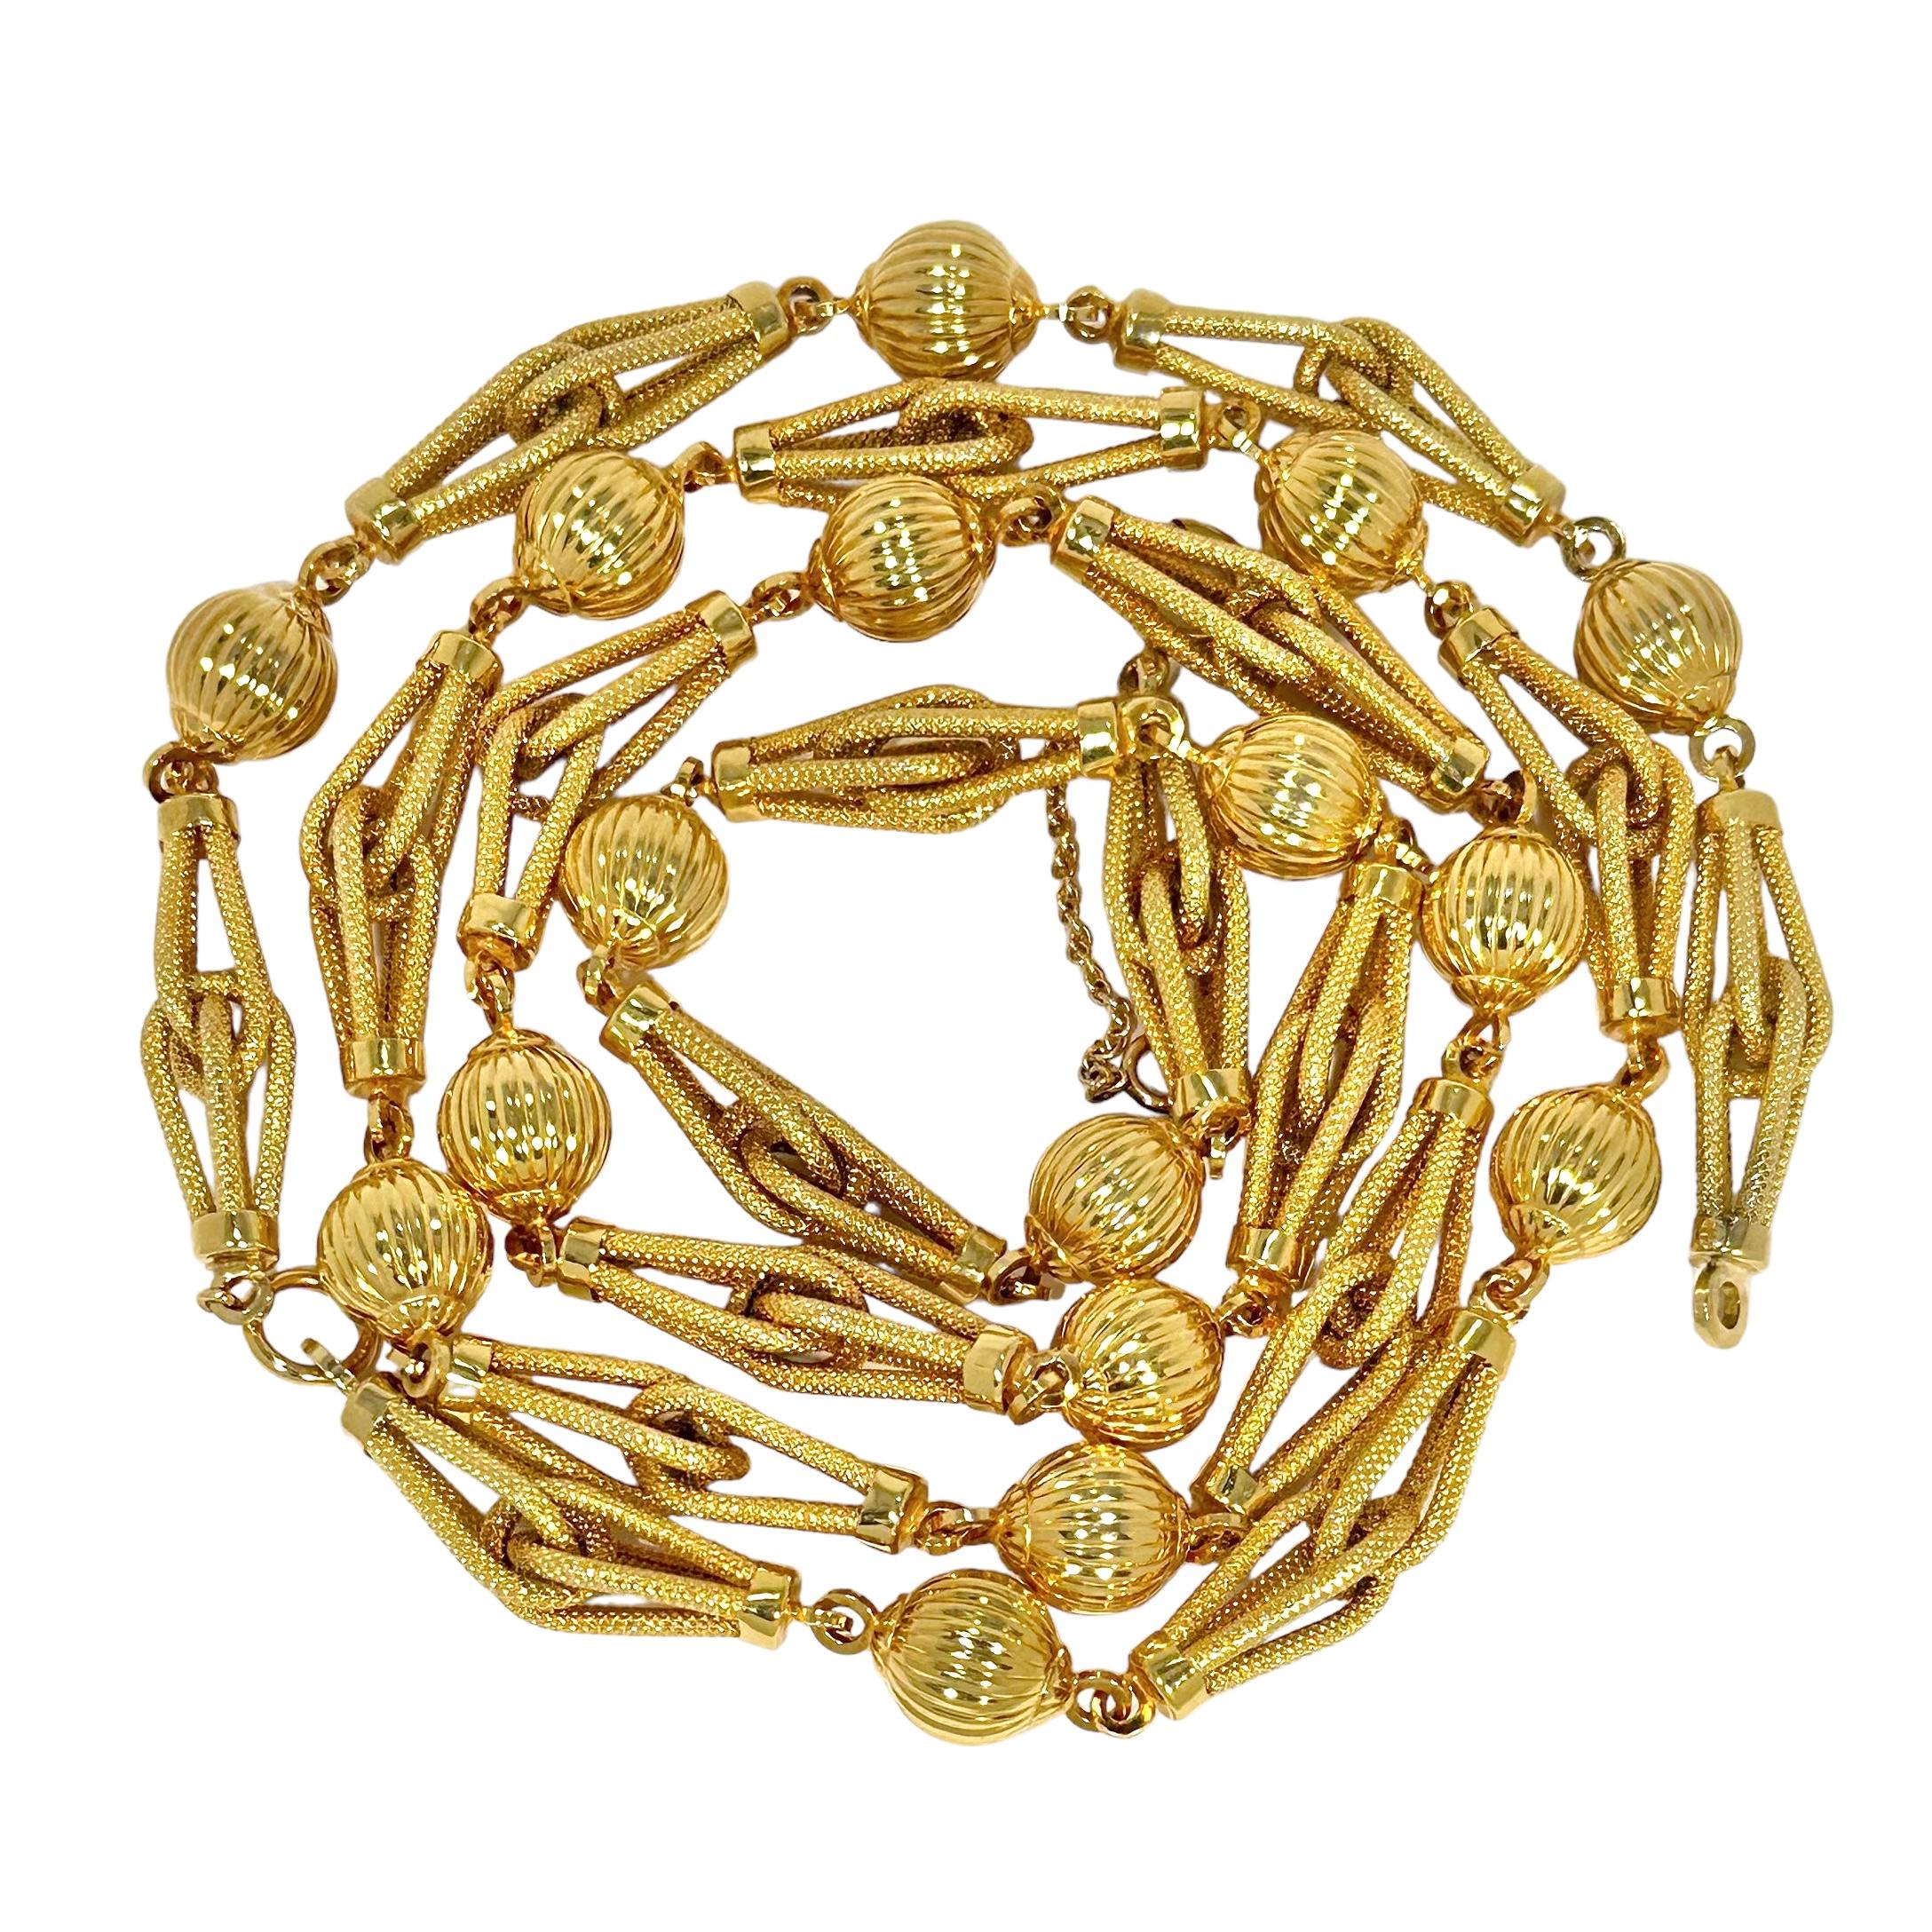 Ce ravissant collier et bracelet italien du milieu du 20e siècle, de la marque Uno-A-Erre, est habilement réalisé et de style classique. Des maillons imbriqués de 1 3/8 pouce de long alternent avec des maillons ronds cannelés melon de 10 mm de